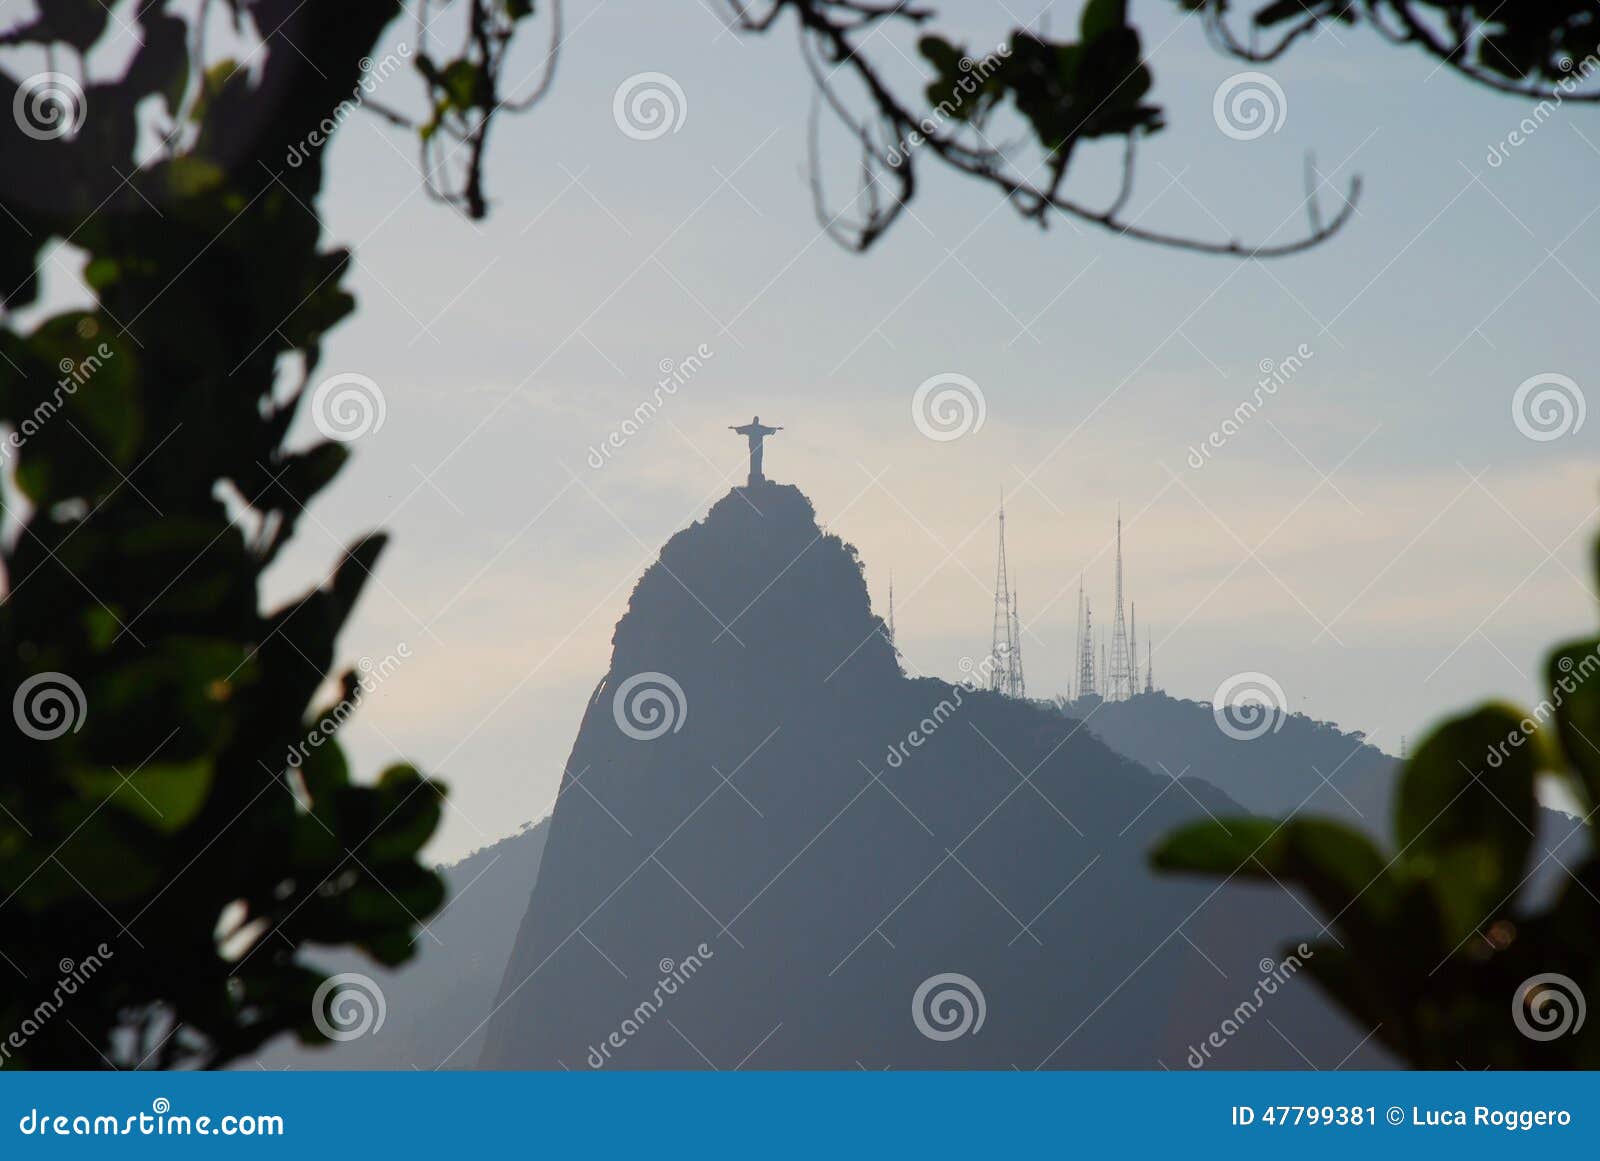 Λόφος Corcovado που βλέπει από Sugarloaf Ρίο ντε Τζανέιρο, Βραζιλία. 330 FT) βρίσκεται στο Tijuca δάσος, ένα εθνικό πάρκο Είναι γνωστό παγκοσμίως για το άγαλμα 38 μέτρου του Ιησού επάνω στην αιχμή του, που τιτλοφορείται Cristo Redentor ή Χριστό απελευθερωτής